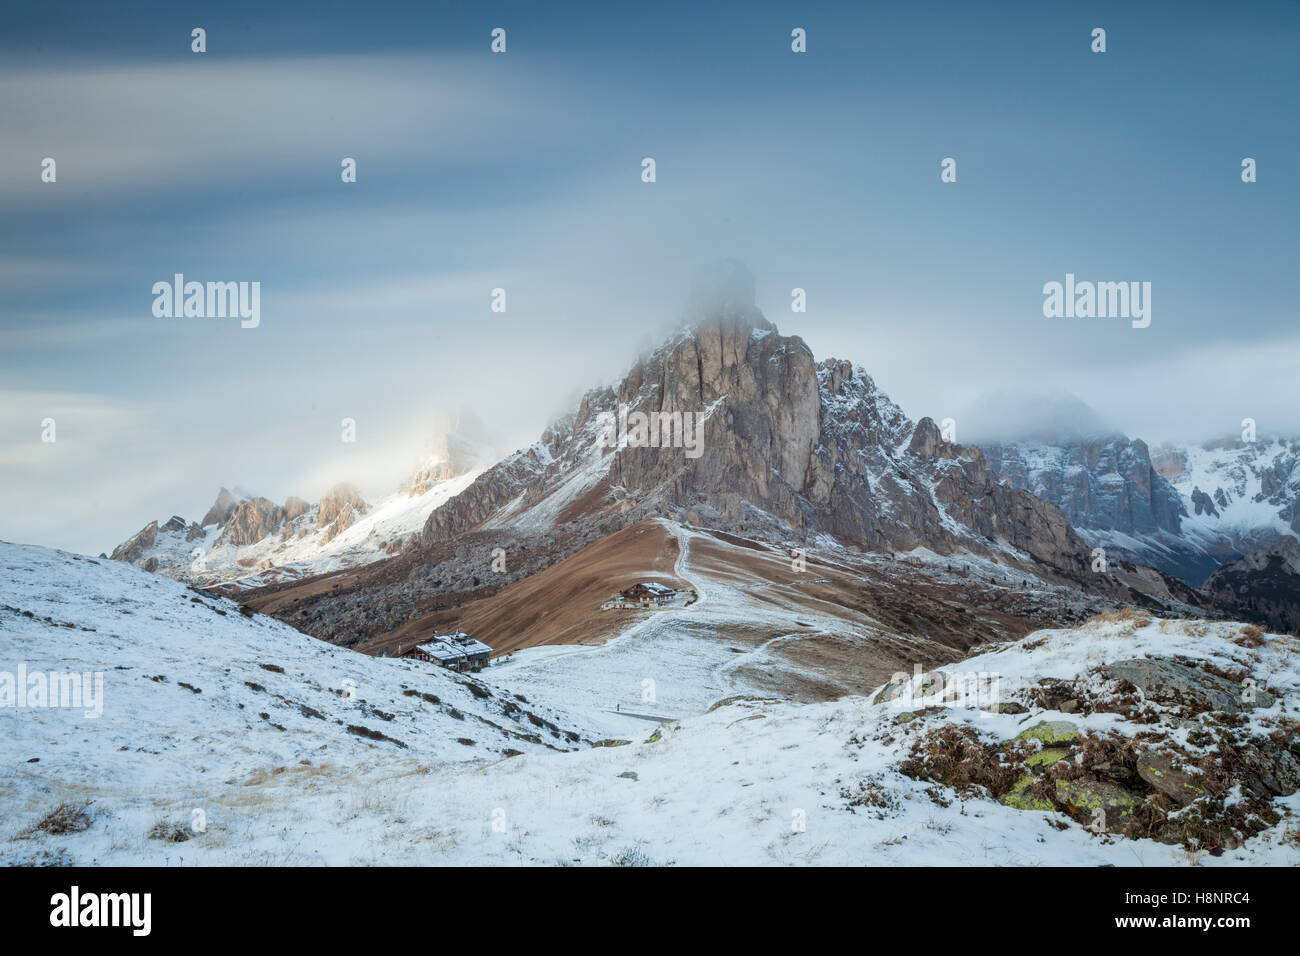 Blizzard at Giau Pass, Dolomites, Italy Stock Photo - Alamy